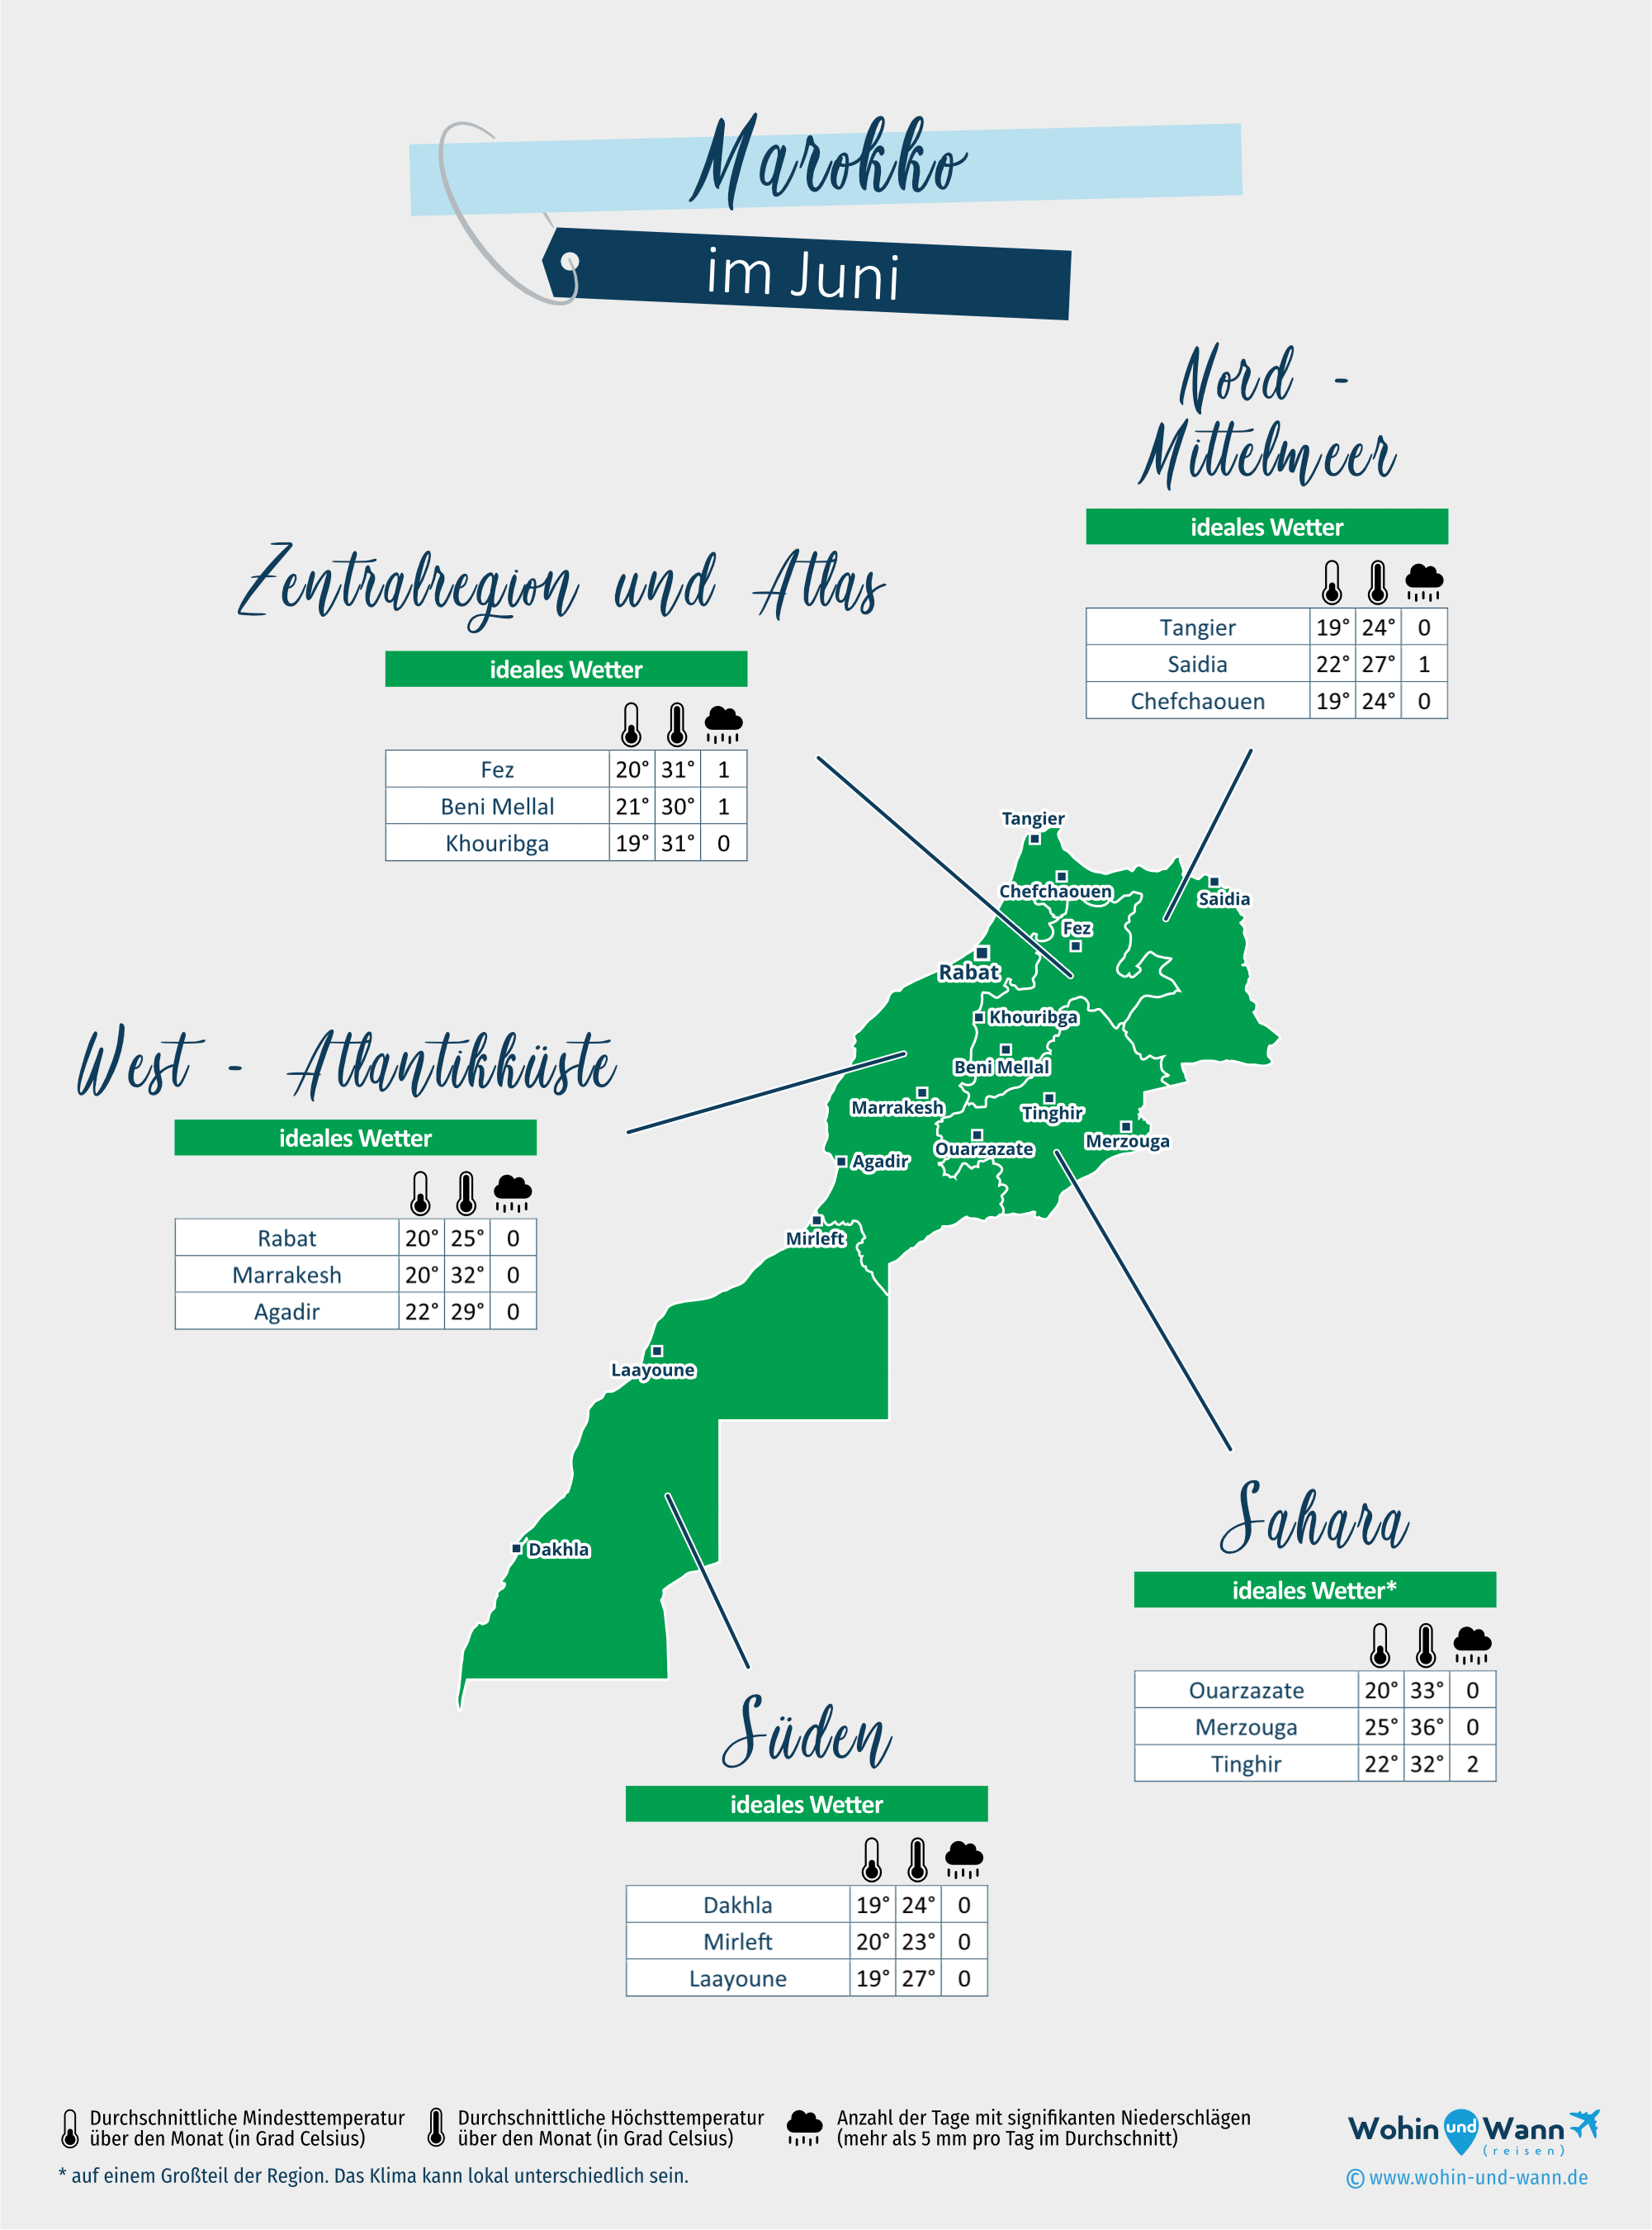 Marokko: Wetterkarte im Juni in verschiedenen Regionen